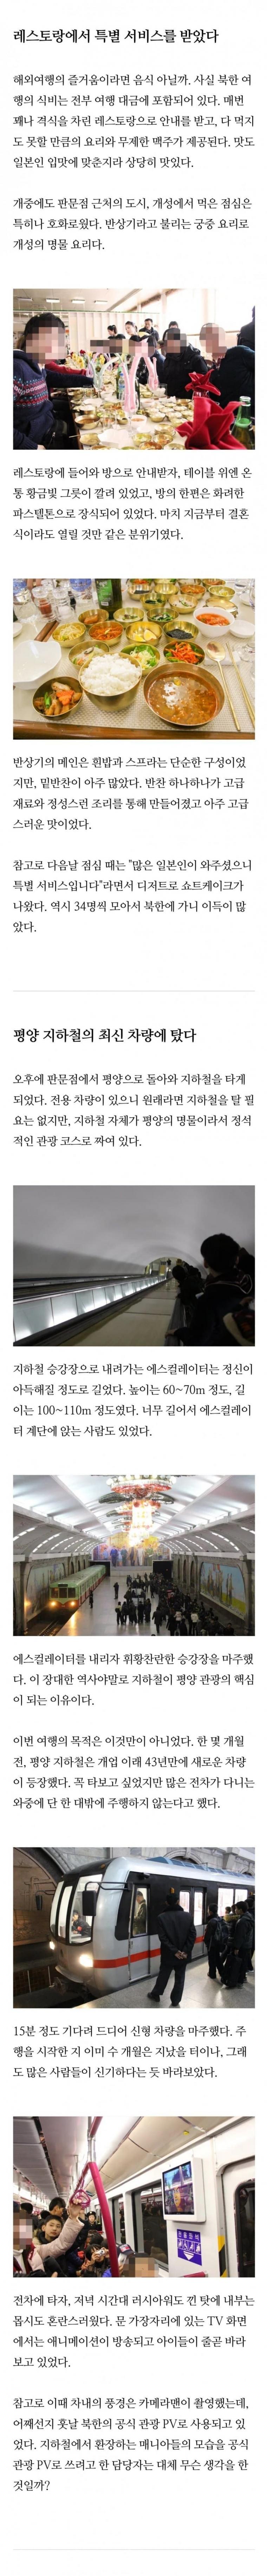 일본 철도 덕후들의 광란의 북한여행4.jpg